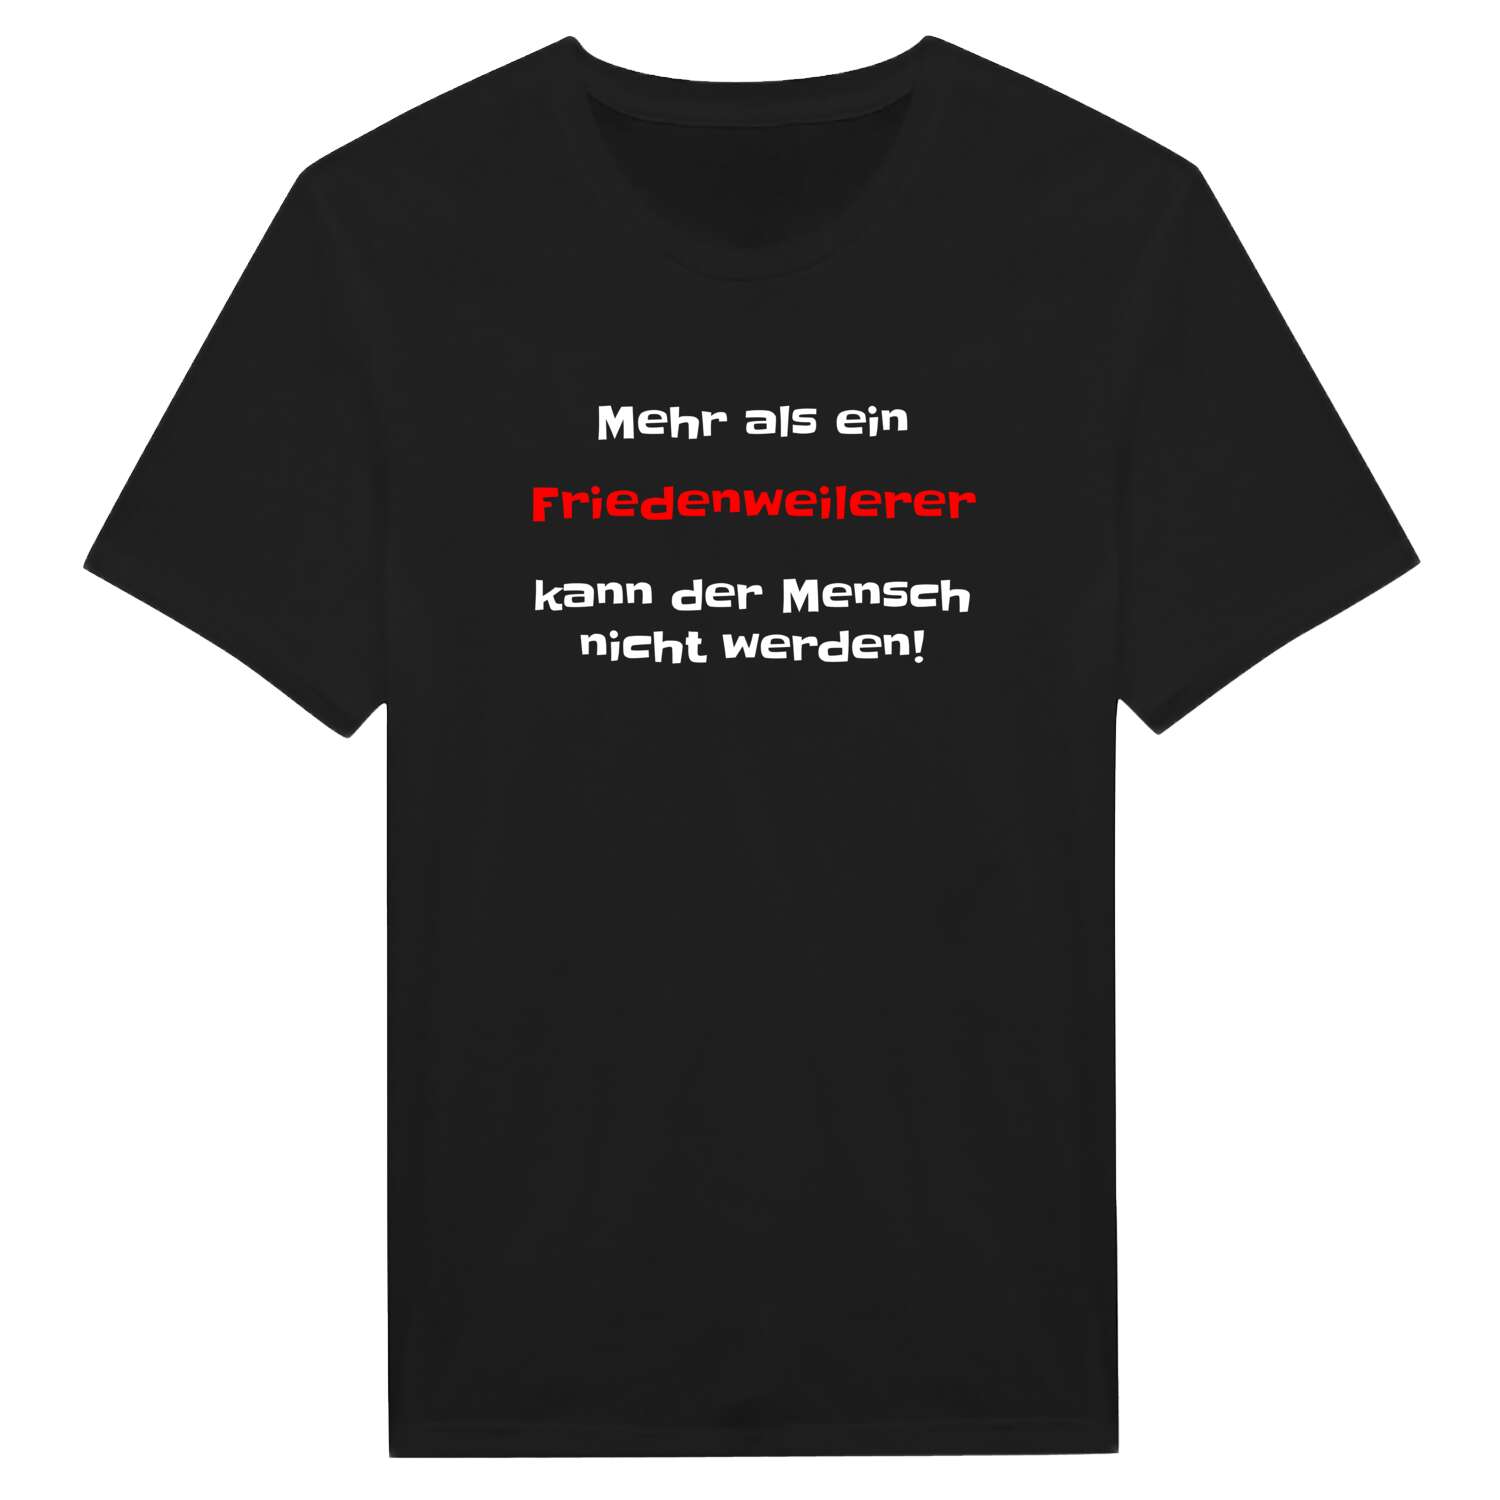 Friedenweiler T-Shirt »Mehr als ein«